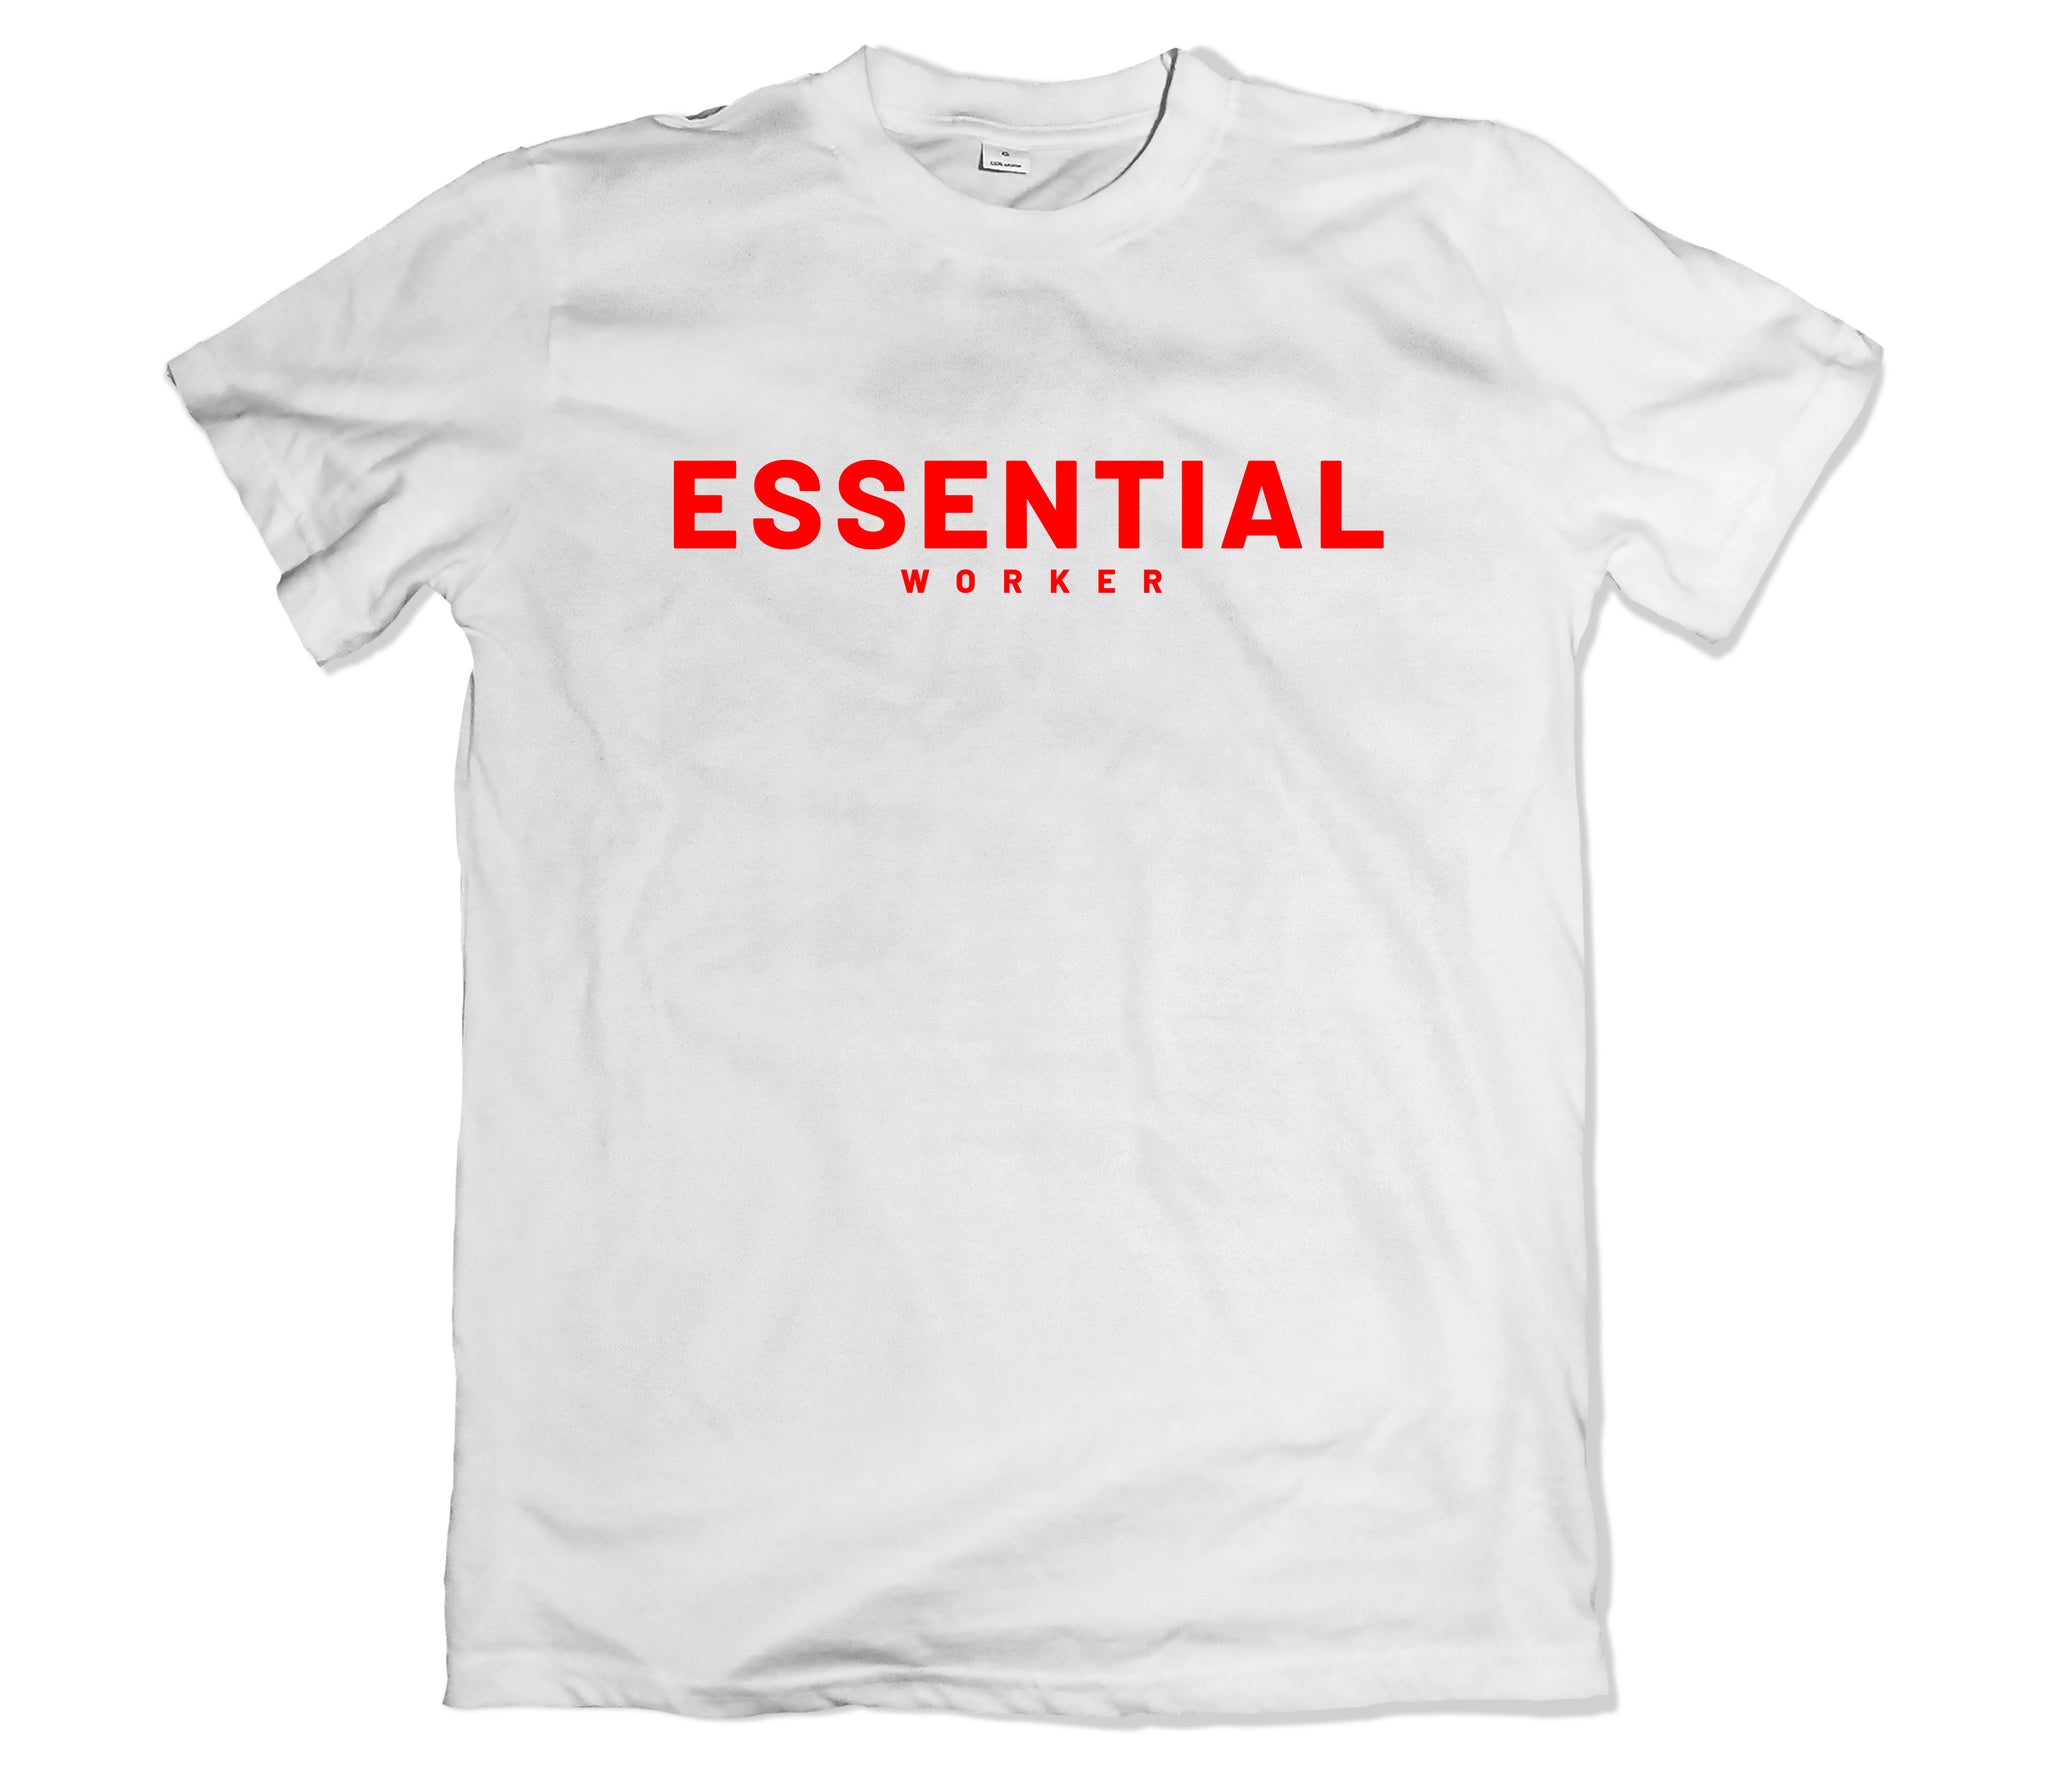 Essential Worker T-Shirt - TOPS, TSS CUSTOM GRPHX, SNEAKER STUDIO, GOLDEN GILT, DESIGN BY TSS